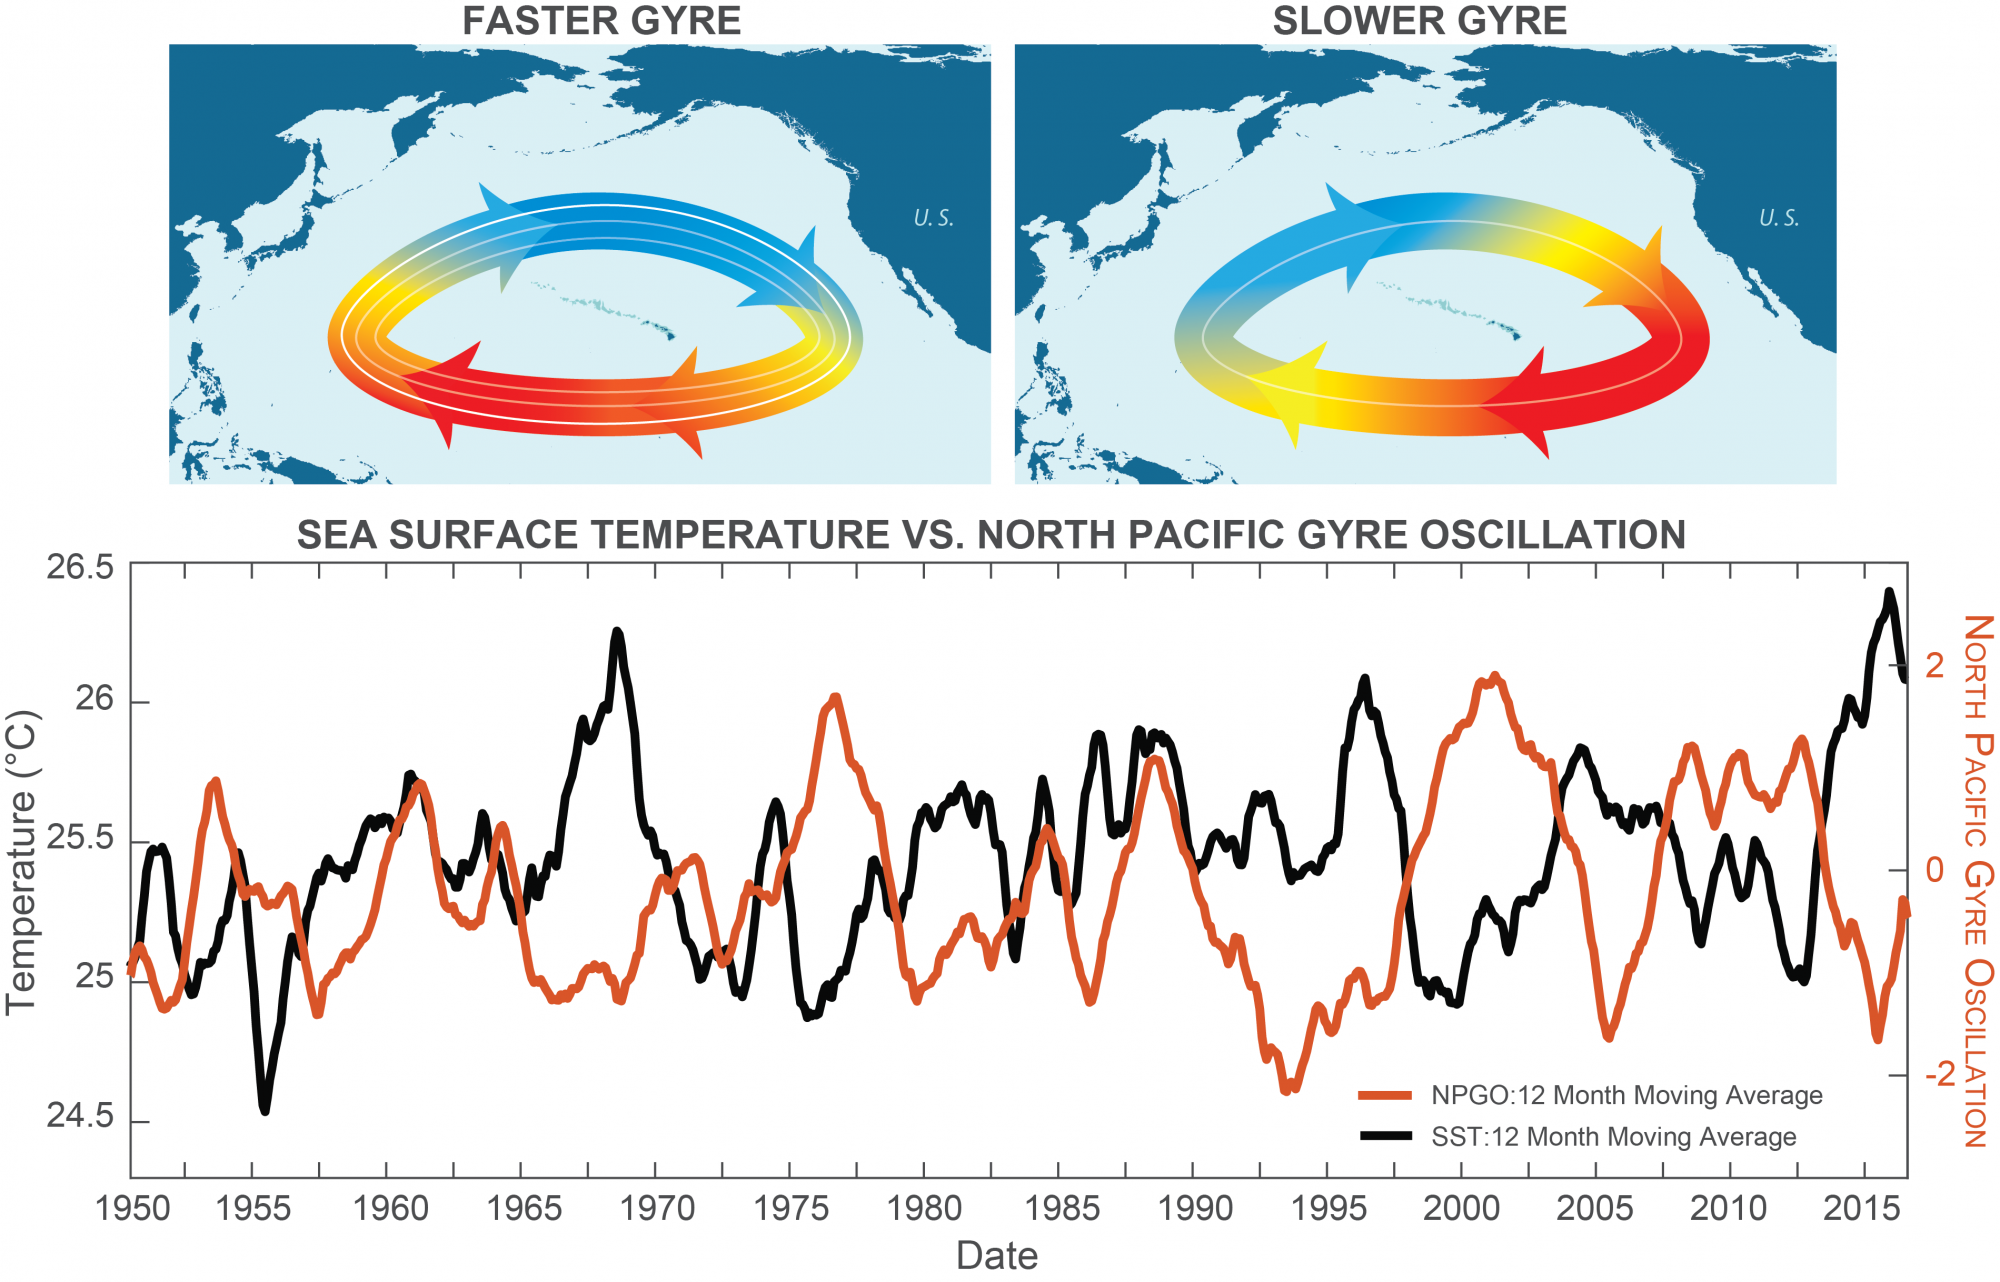 Sea surface temperature vs. North Pacific Gyre Oscillation